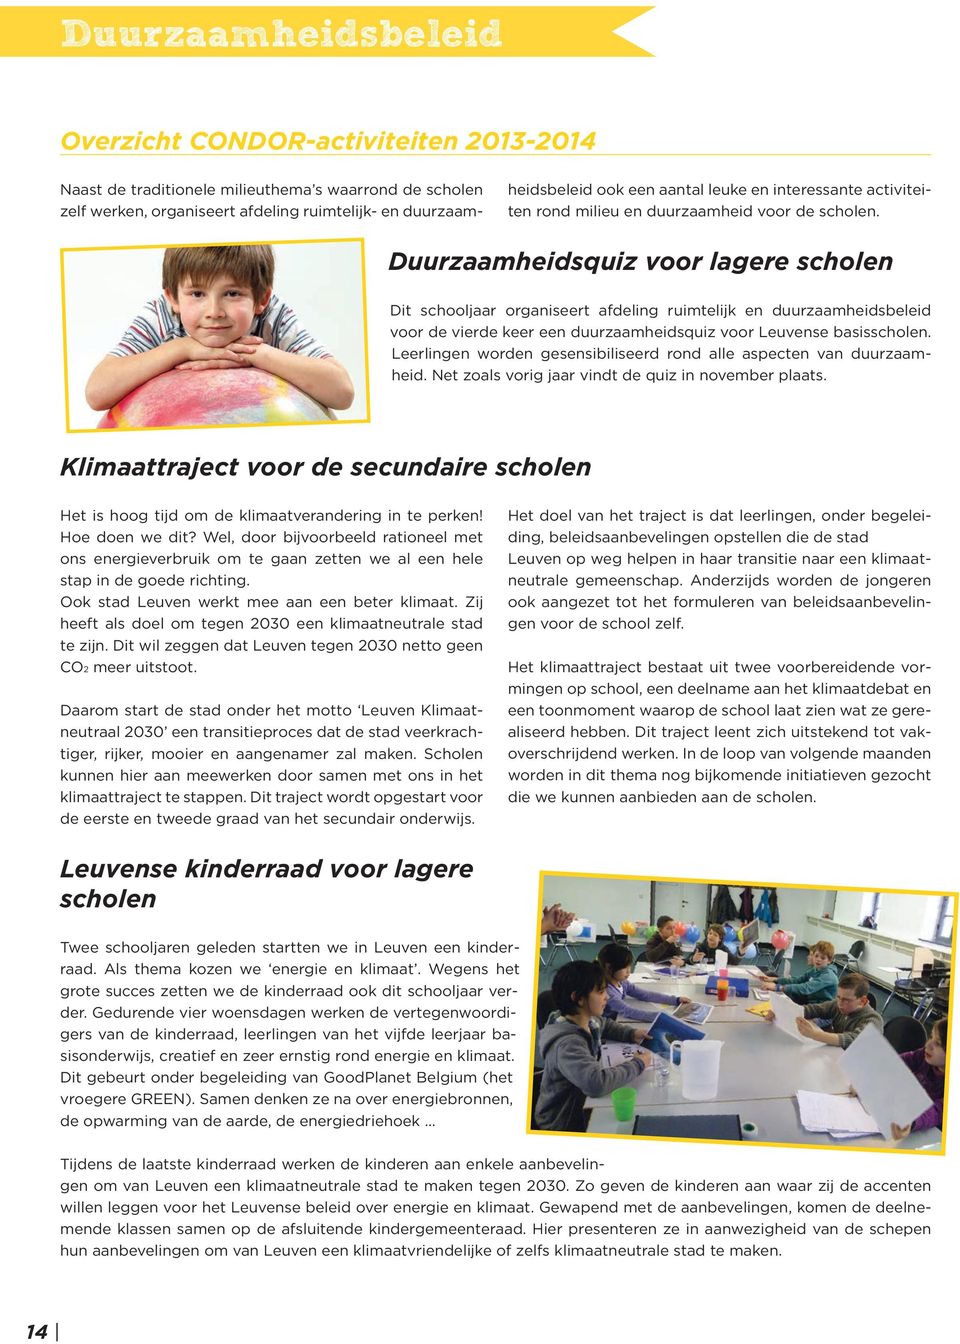 Duurzaamheidsquiz voor lagere scholen Dit schooljaar organiseert afdeling ruimtelijk en duurzaamheidsbeleid voor de vierde keer een duurzaamheidsquiz voor Leuvense basisscholen.